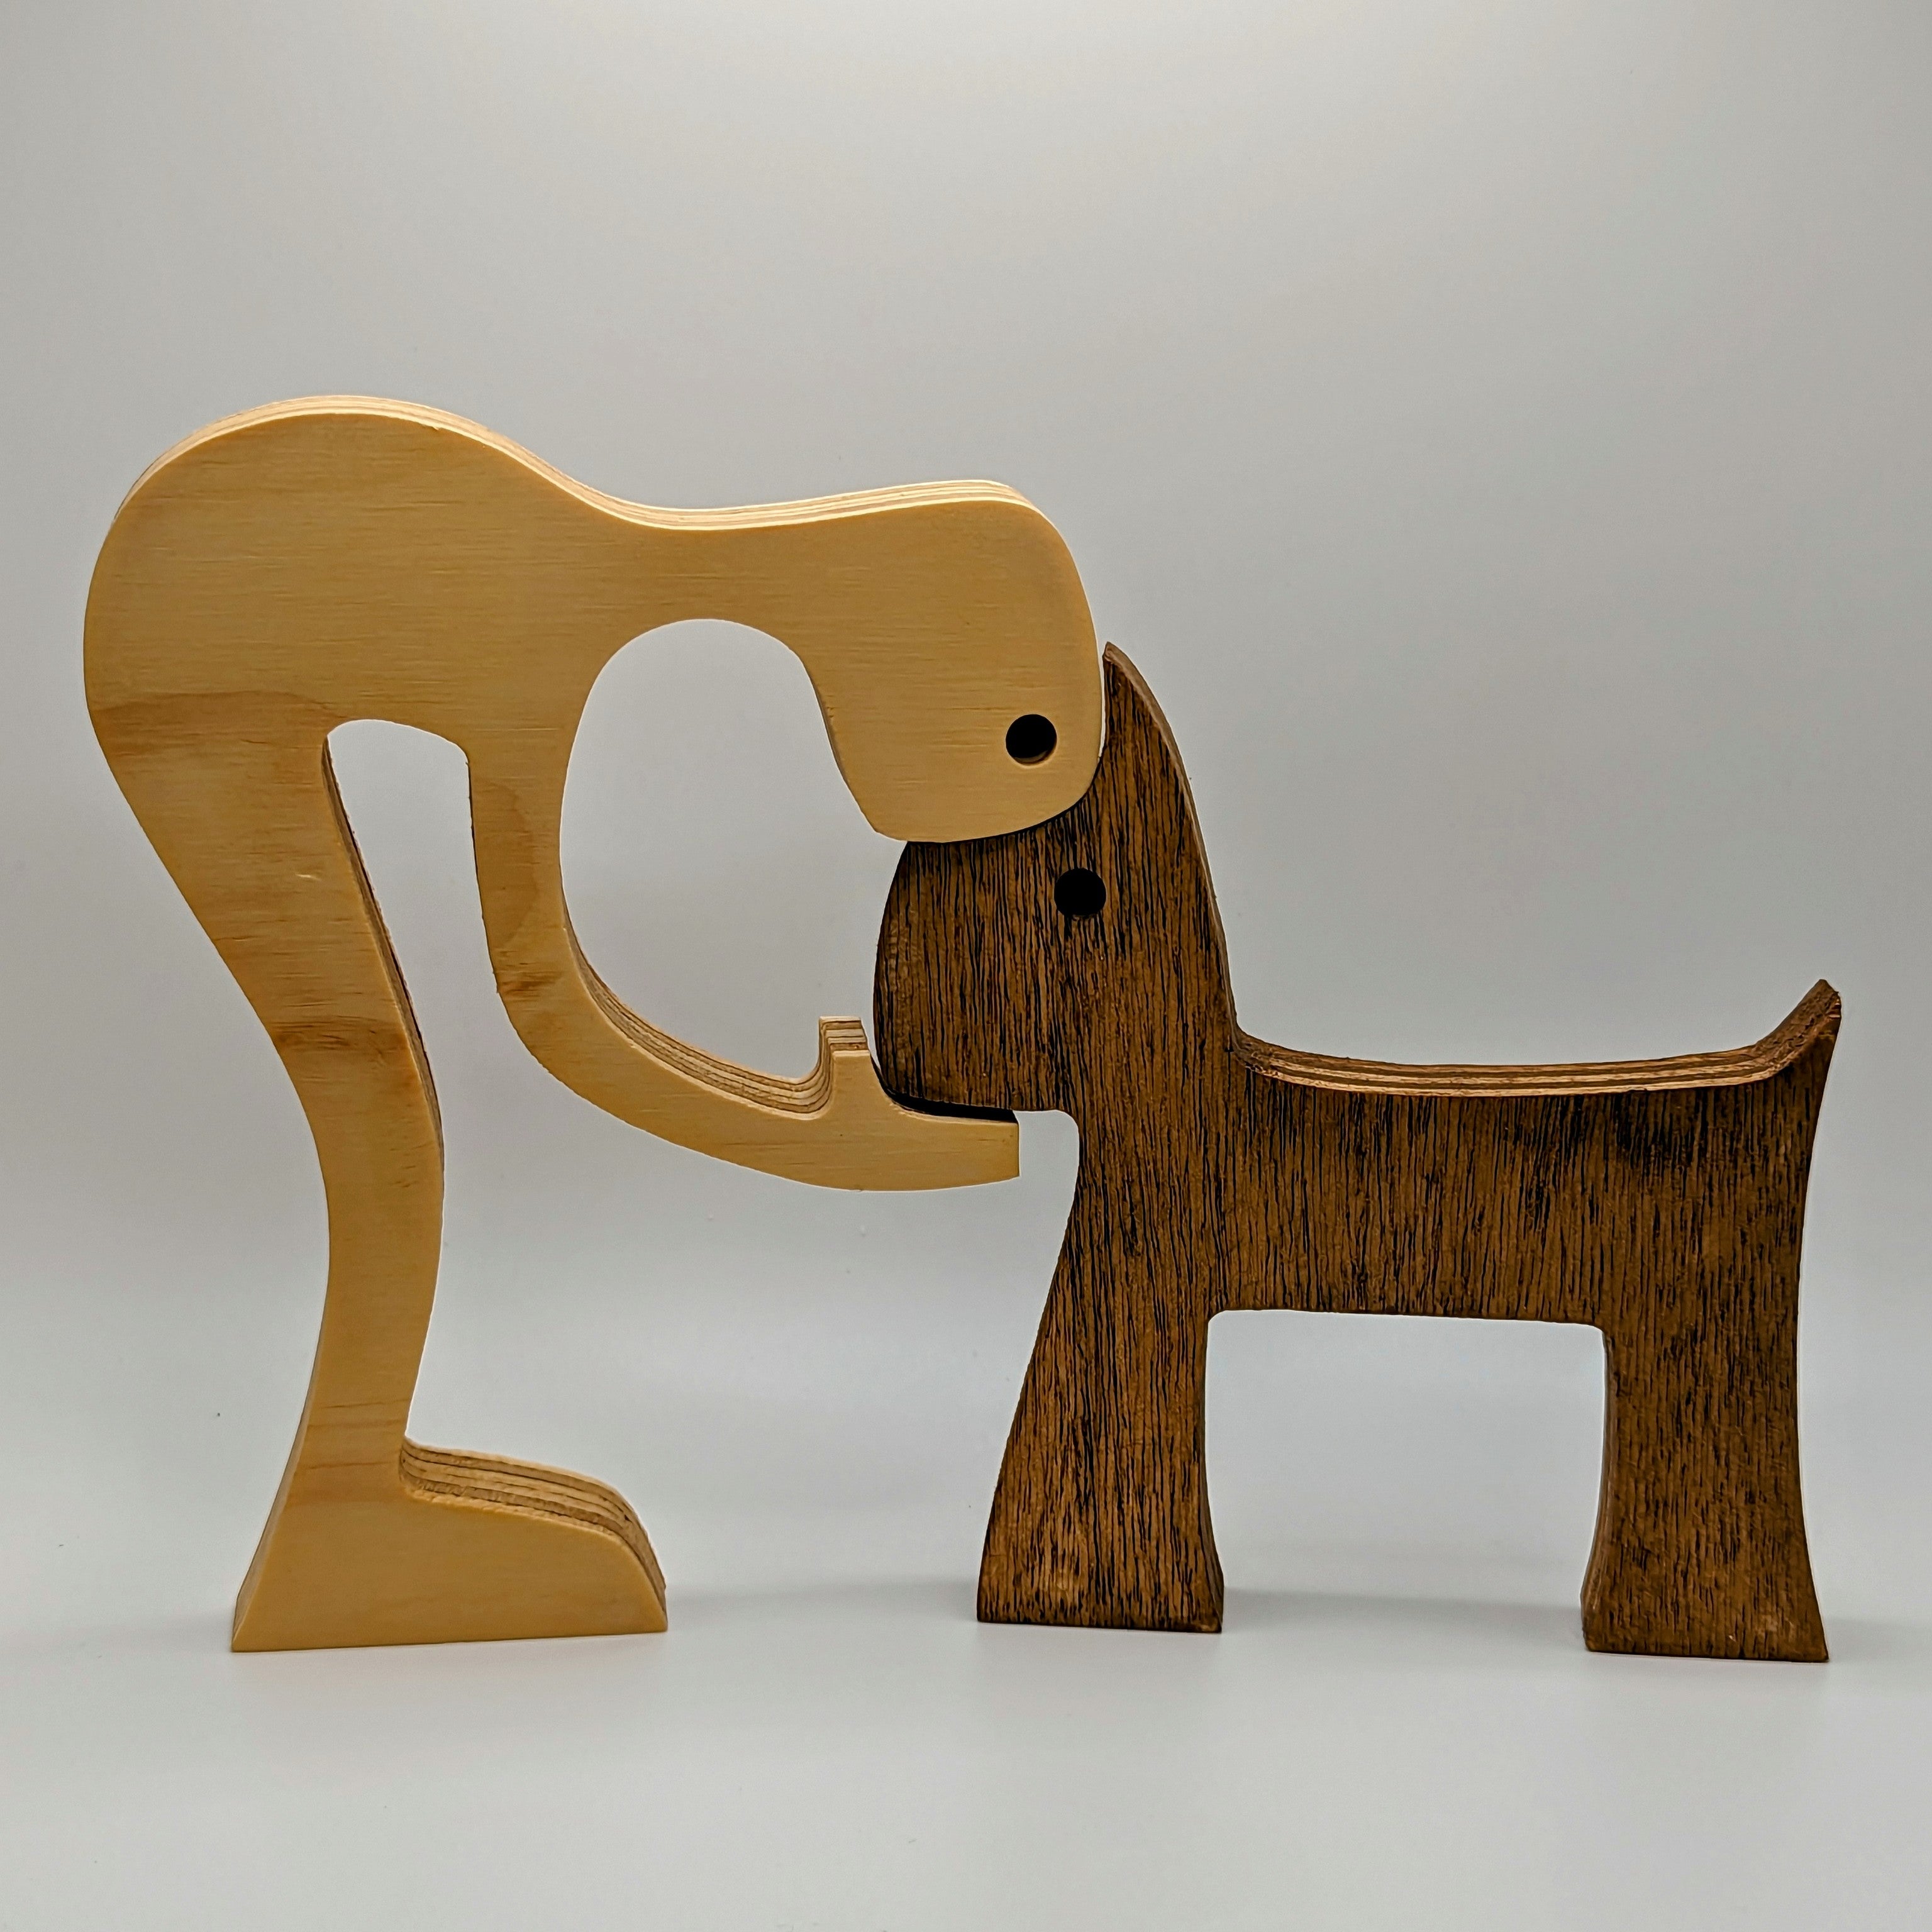 Owner Dog Wooden Sculpture